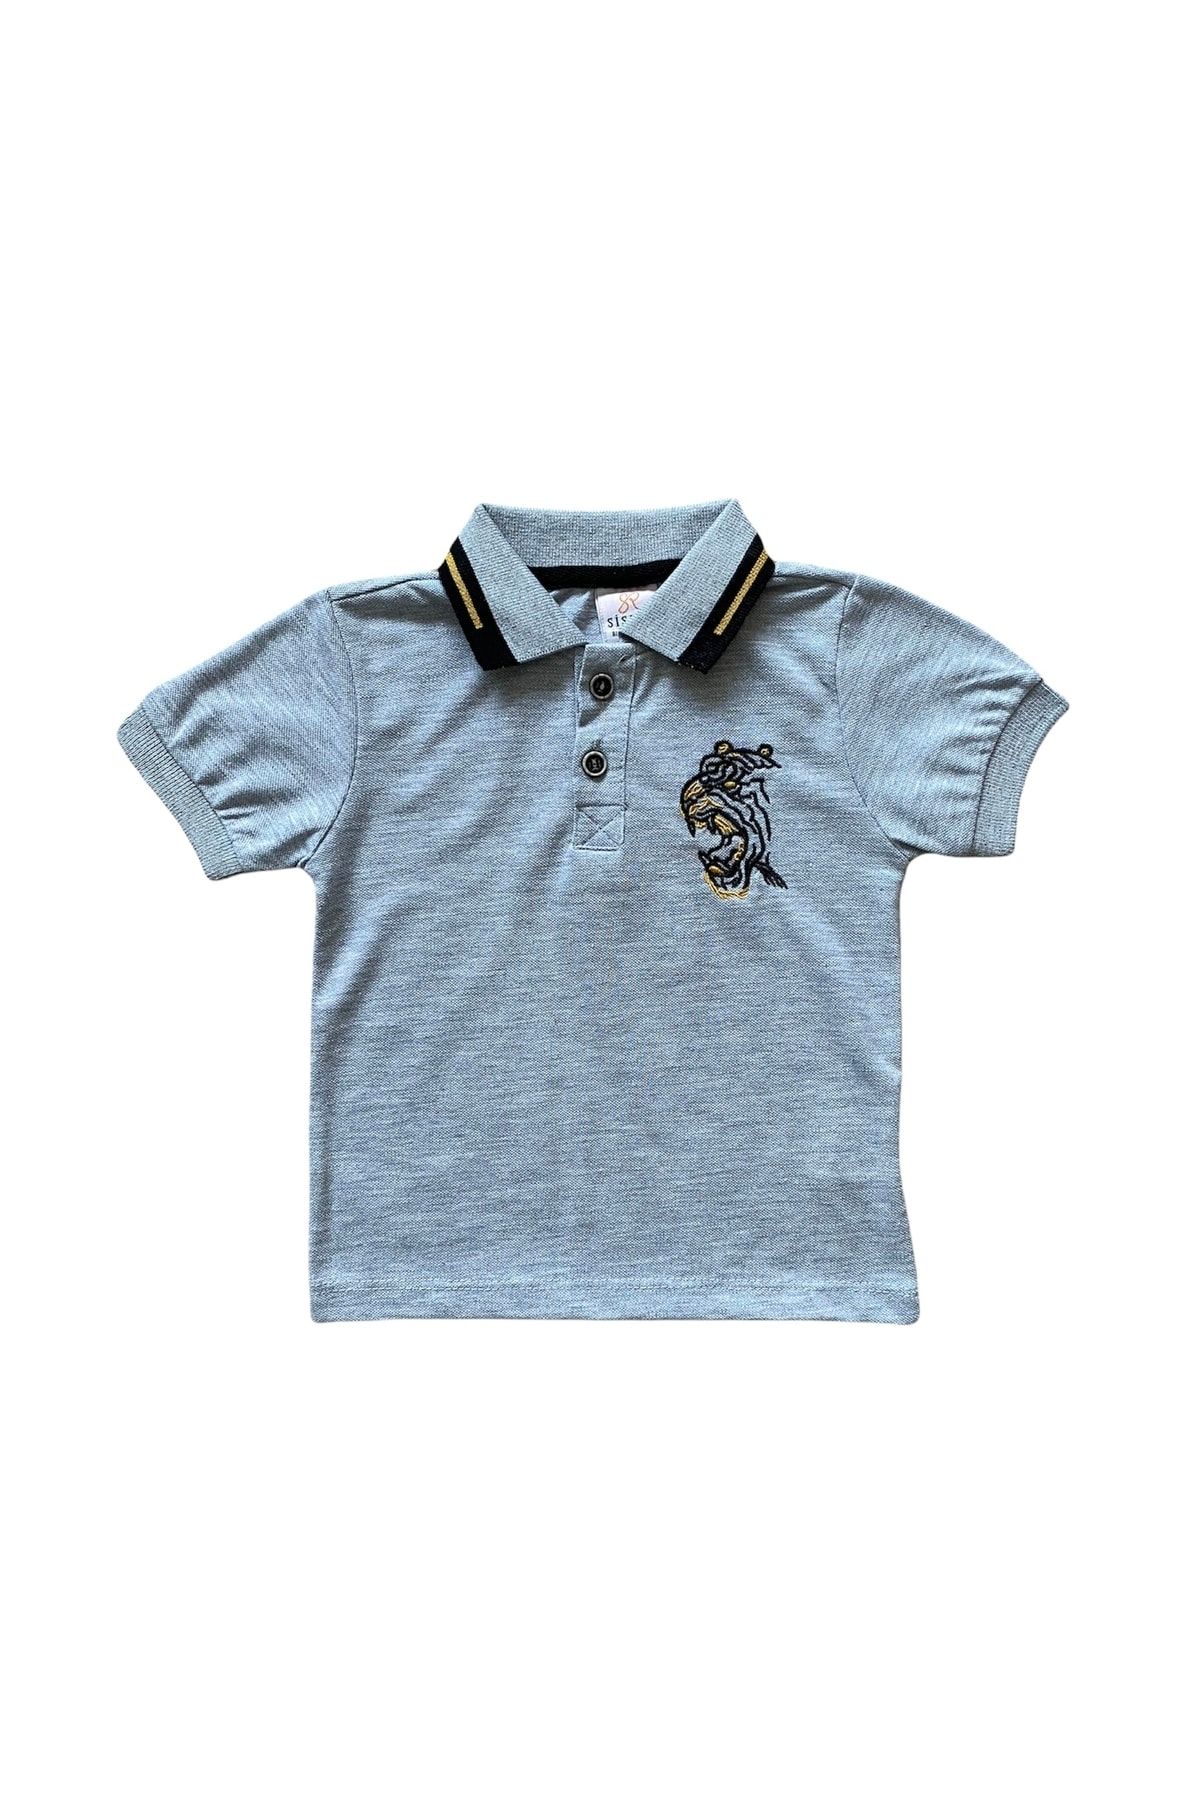 Sisero Gri Aslan Nakışlı Erkek Çocuk Lacos T-shirt